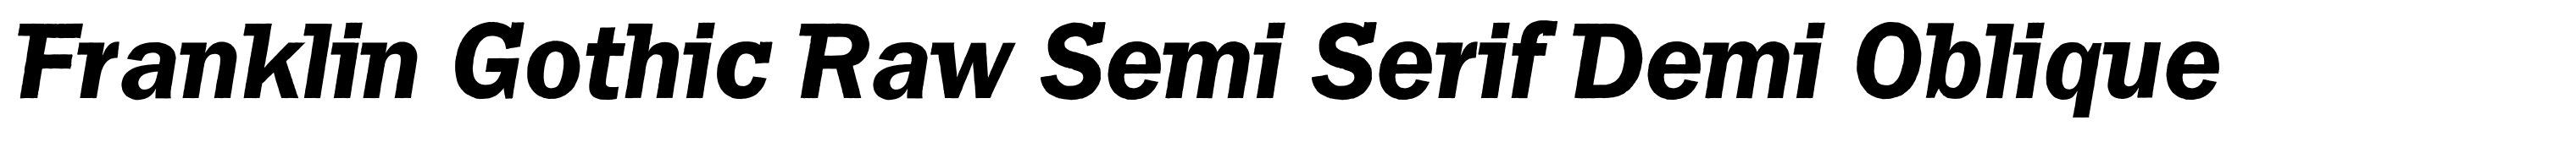 Franklin Gothic Raw Semi Serif Demi Oblique